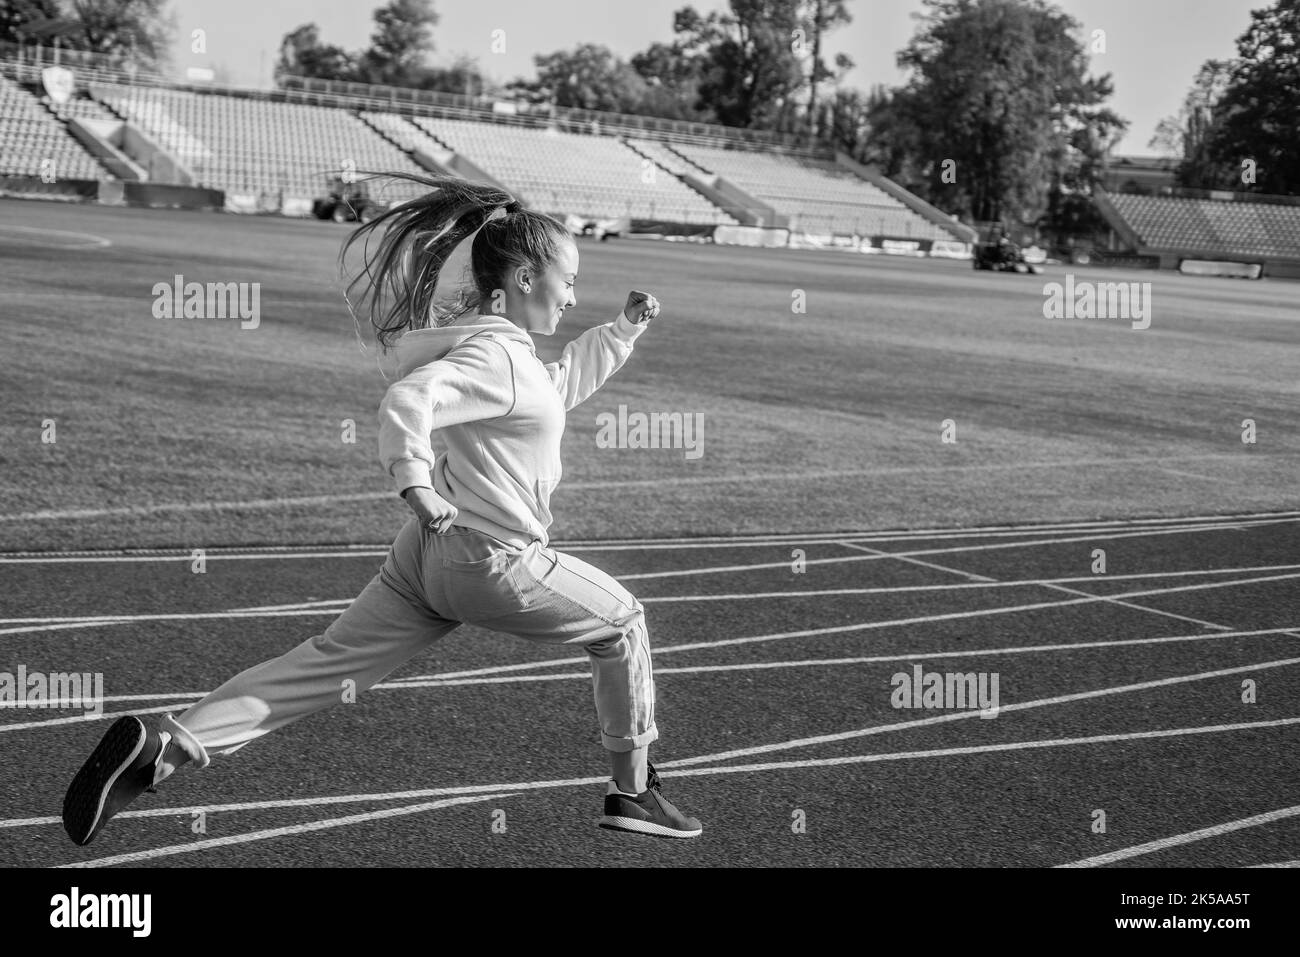 La règle en cours d'exécution est juste exécutée. Une jeune fille énergique court sur la piste de course. École de sport Banque D'Images